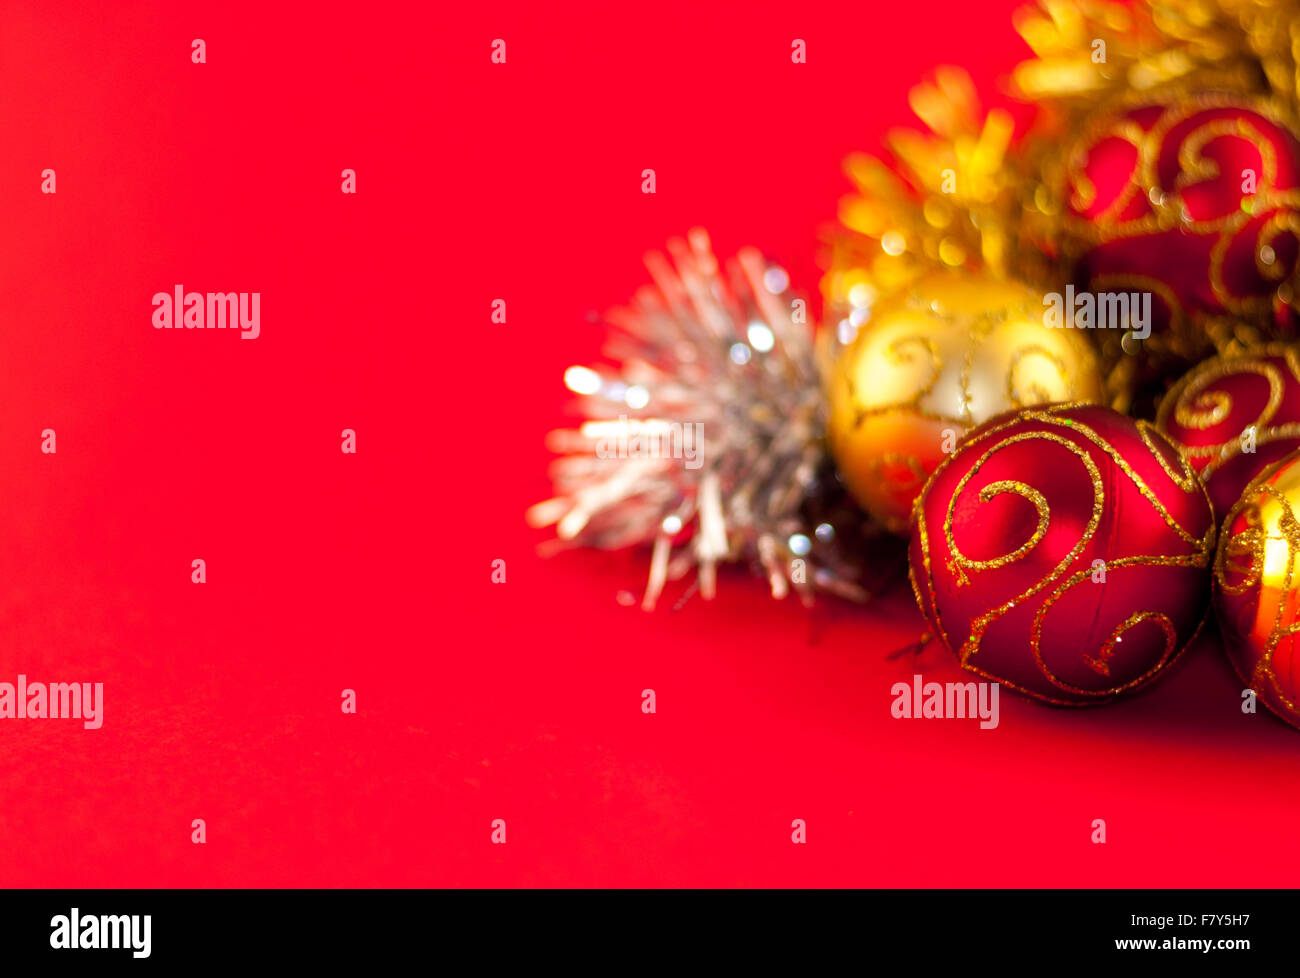 La decoración navideña, rojo, plata y oro sobre fondo rojo. Foto de stock